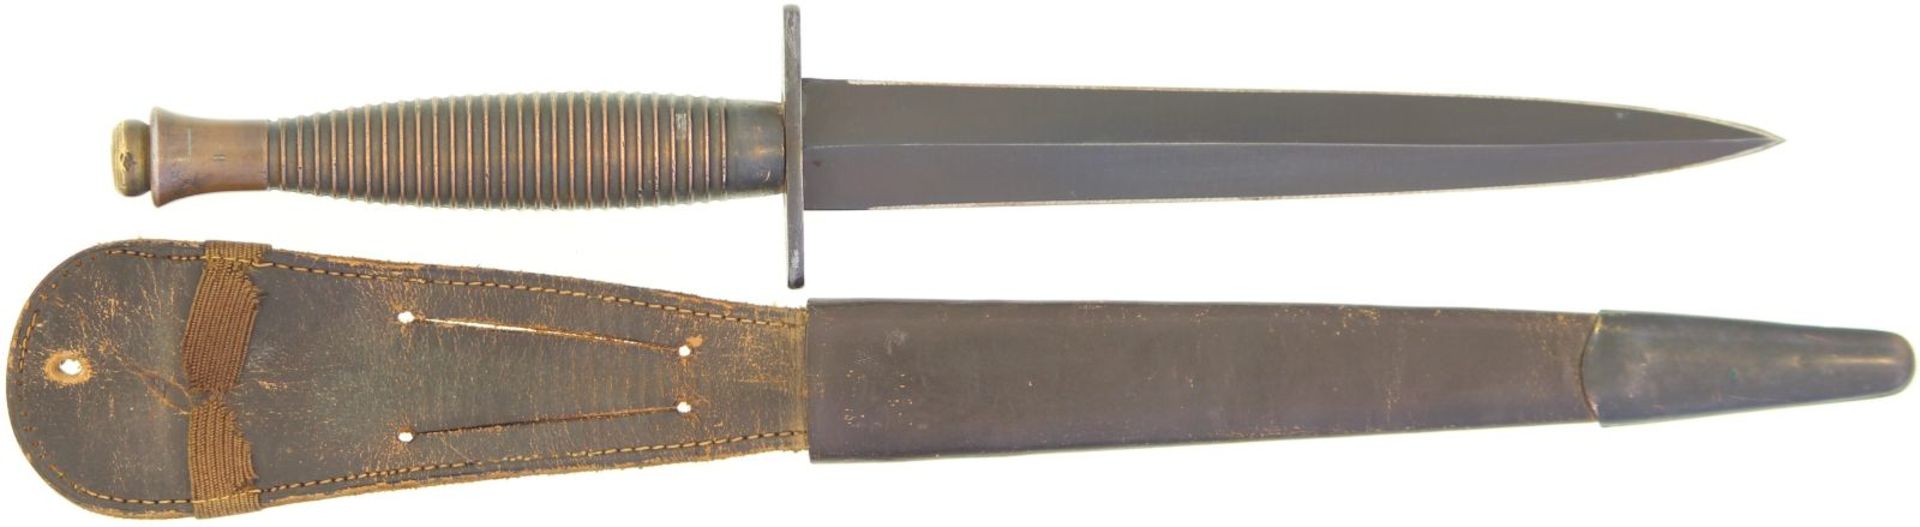 Kommandodolch Fairbairn-Sykes, third pattern 1943. 175mm lange symmetrisch geschliffene, geschwärzte